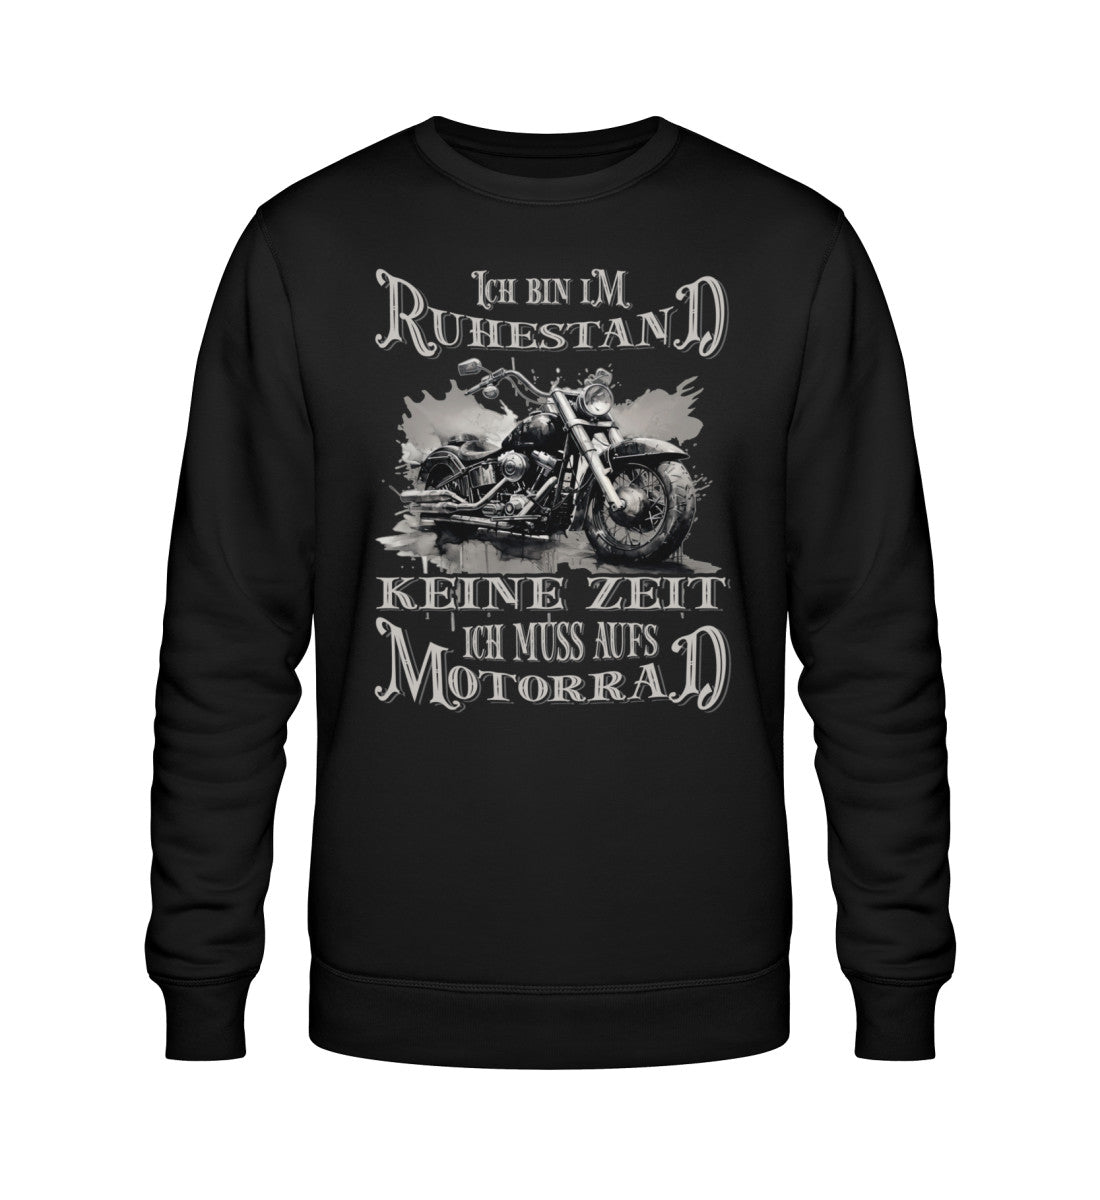 Ein Biker Sweatshirt für Motorradfahrer von Wingbikers mit dem Aufdruck, Ich bin im Ruhestand - Keine Zeit - Ich muss aufs Motorrad, in schwarz.